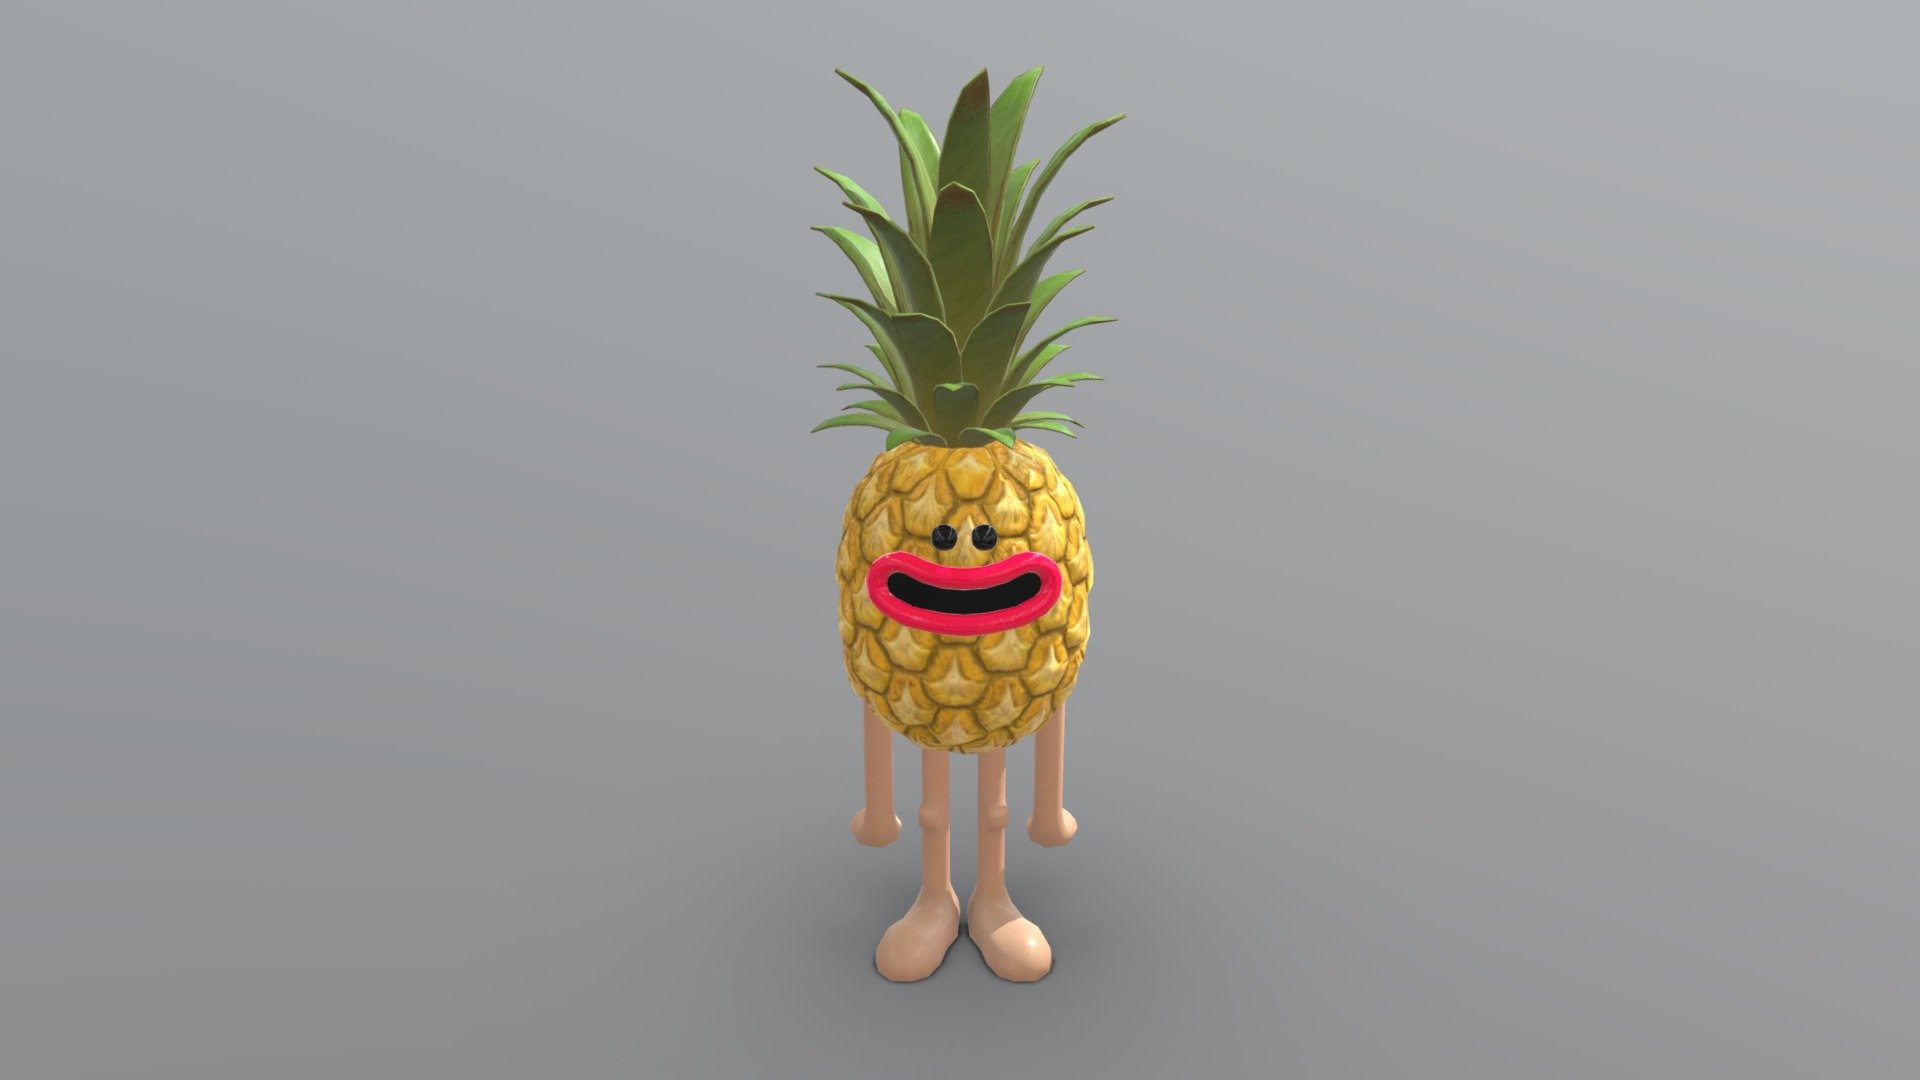 Pineapple fella - 3D model by leebowditch 3d model